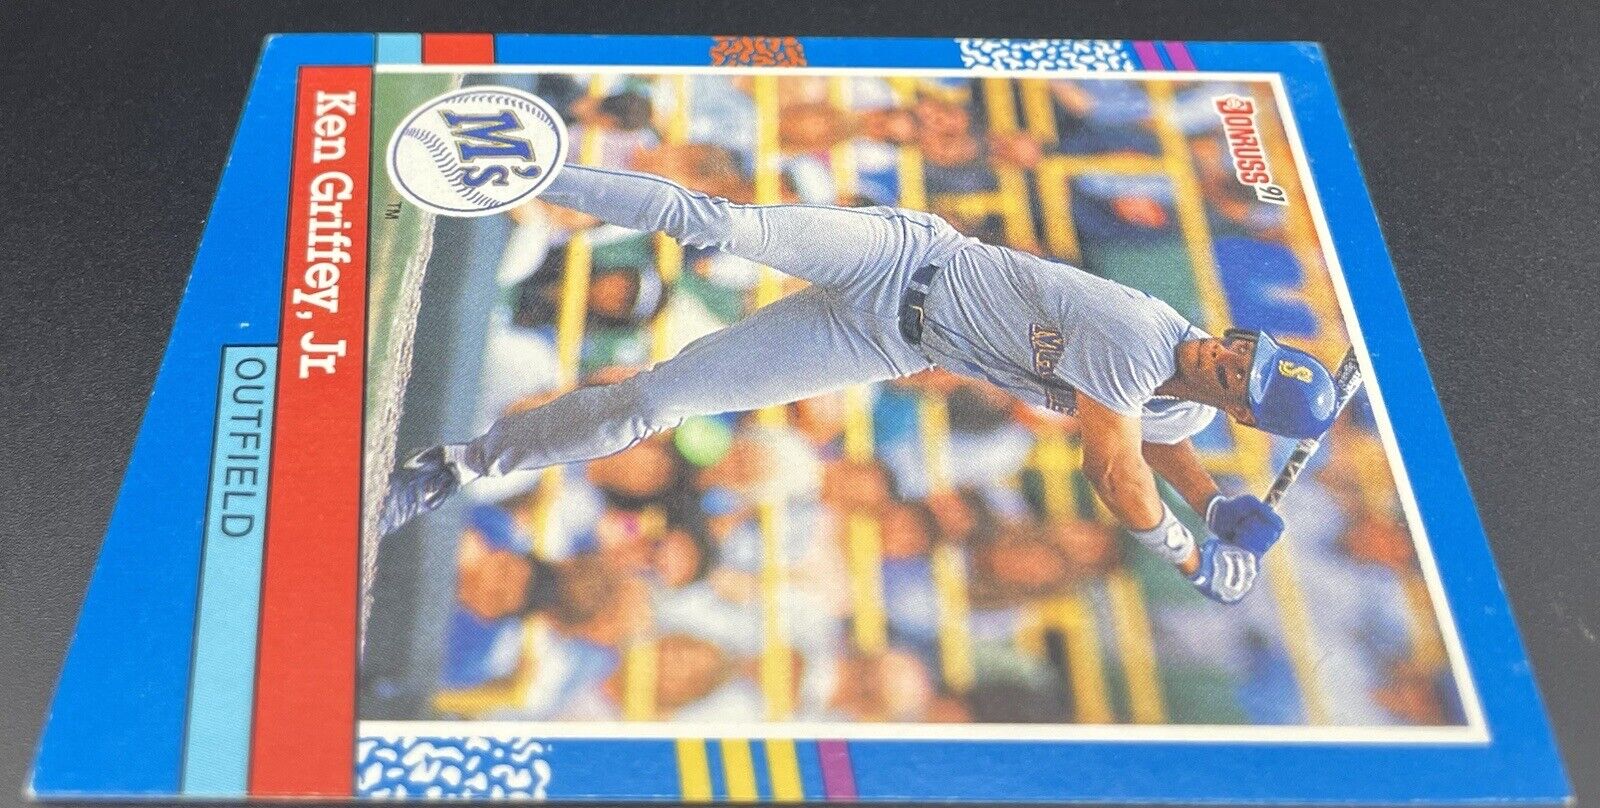 1991 Donruss Ken Griffey Jr #77 Error Card 🔥🔥RARE CARD Seattle Mariners